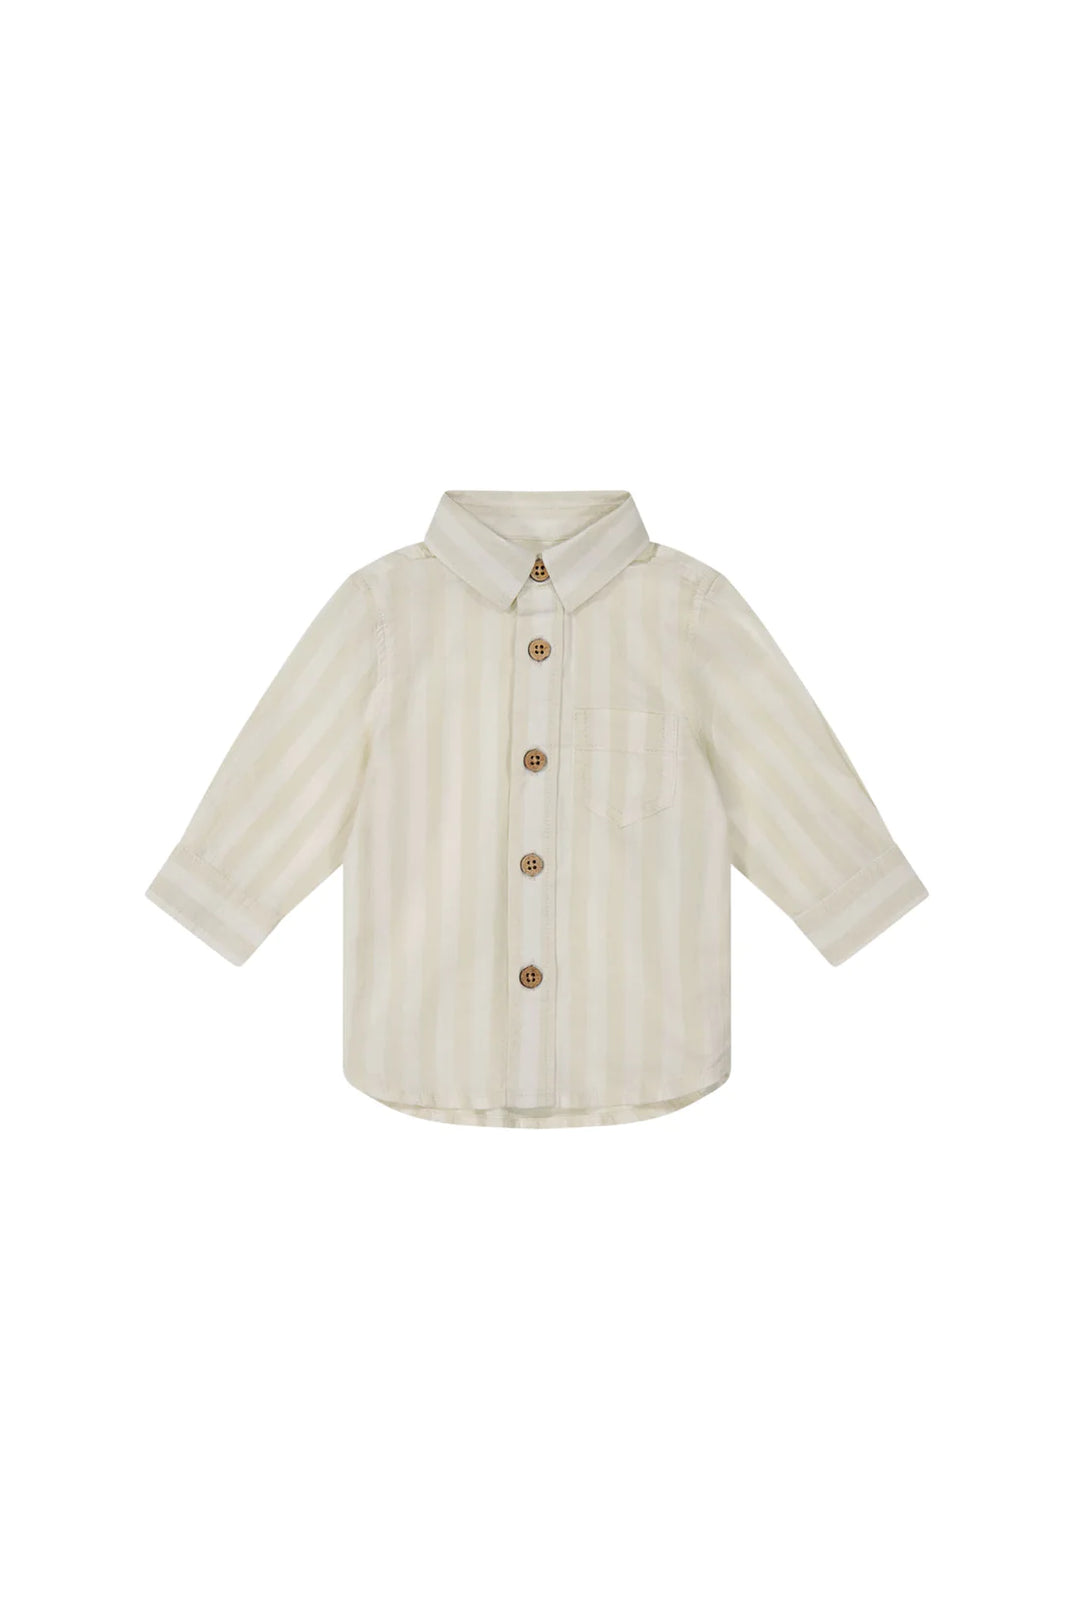 Quentin Woven Shirt - Fog/Cloud Stripe - JL & CO. boutique 